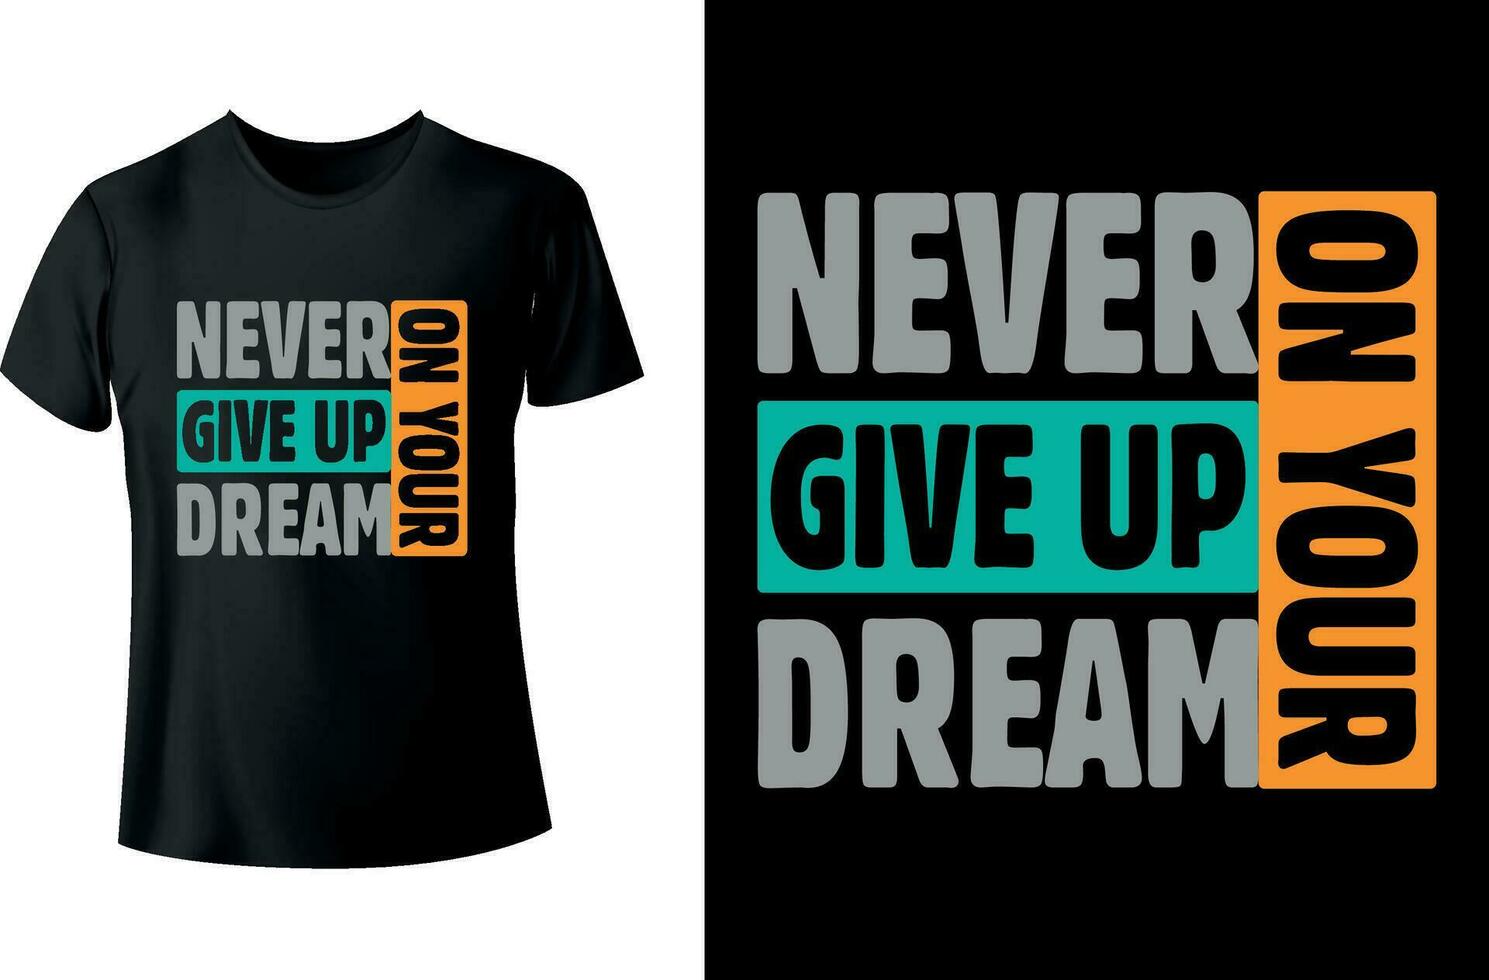 jamais donner en haut sur votre rêver typographie T-shirt conception vecteur